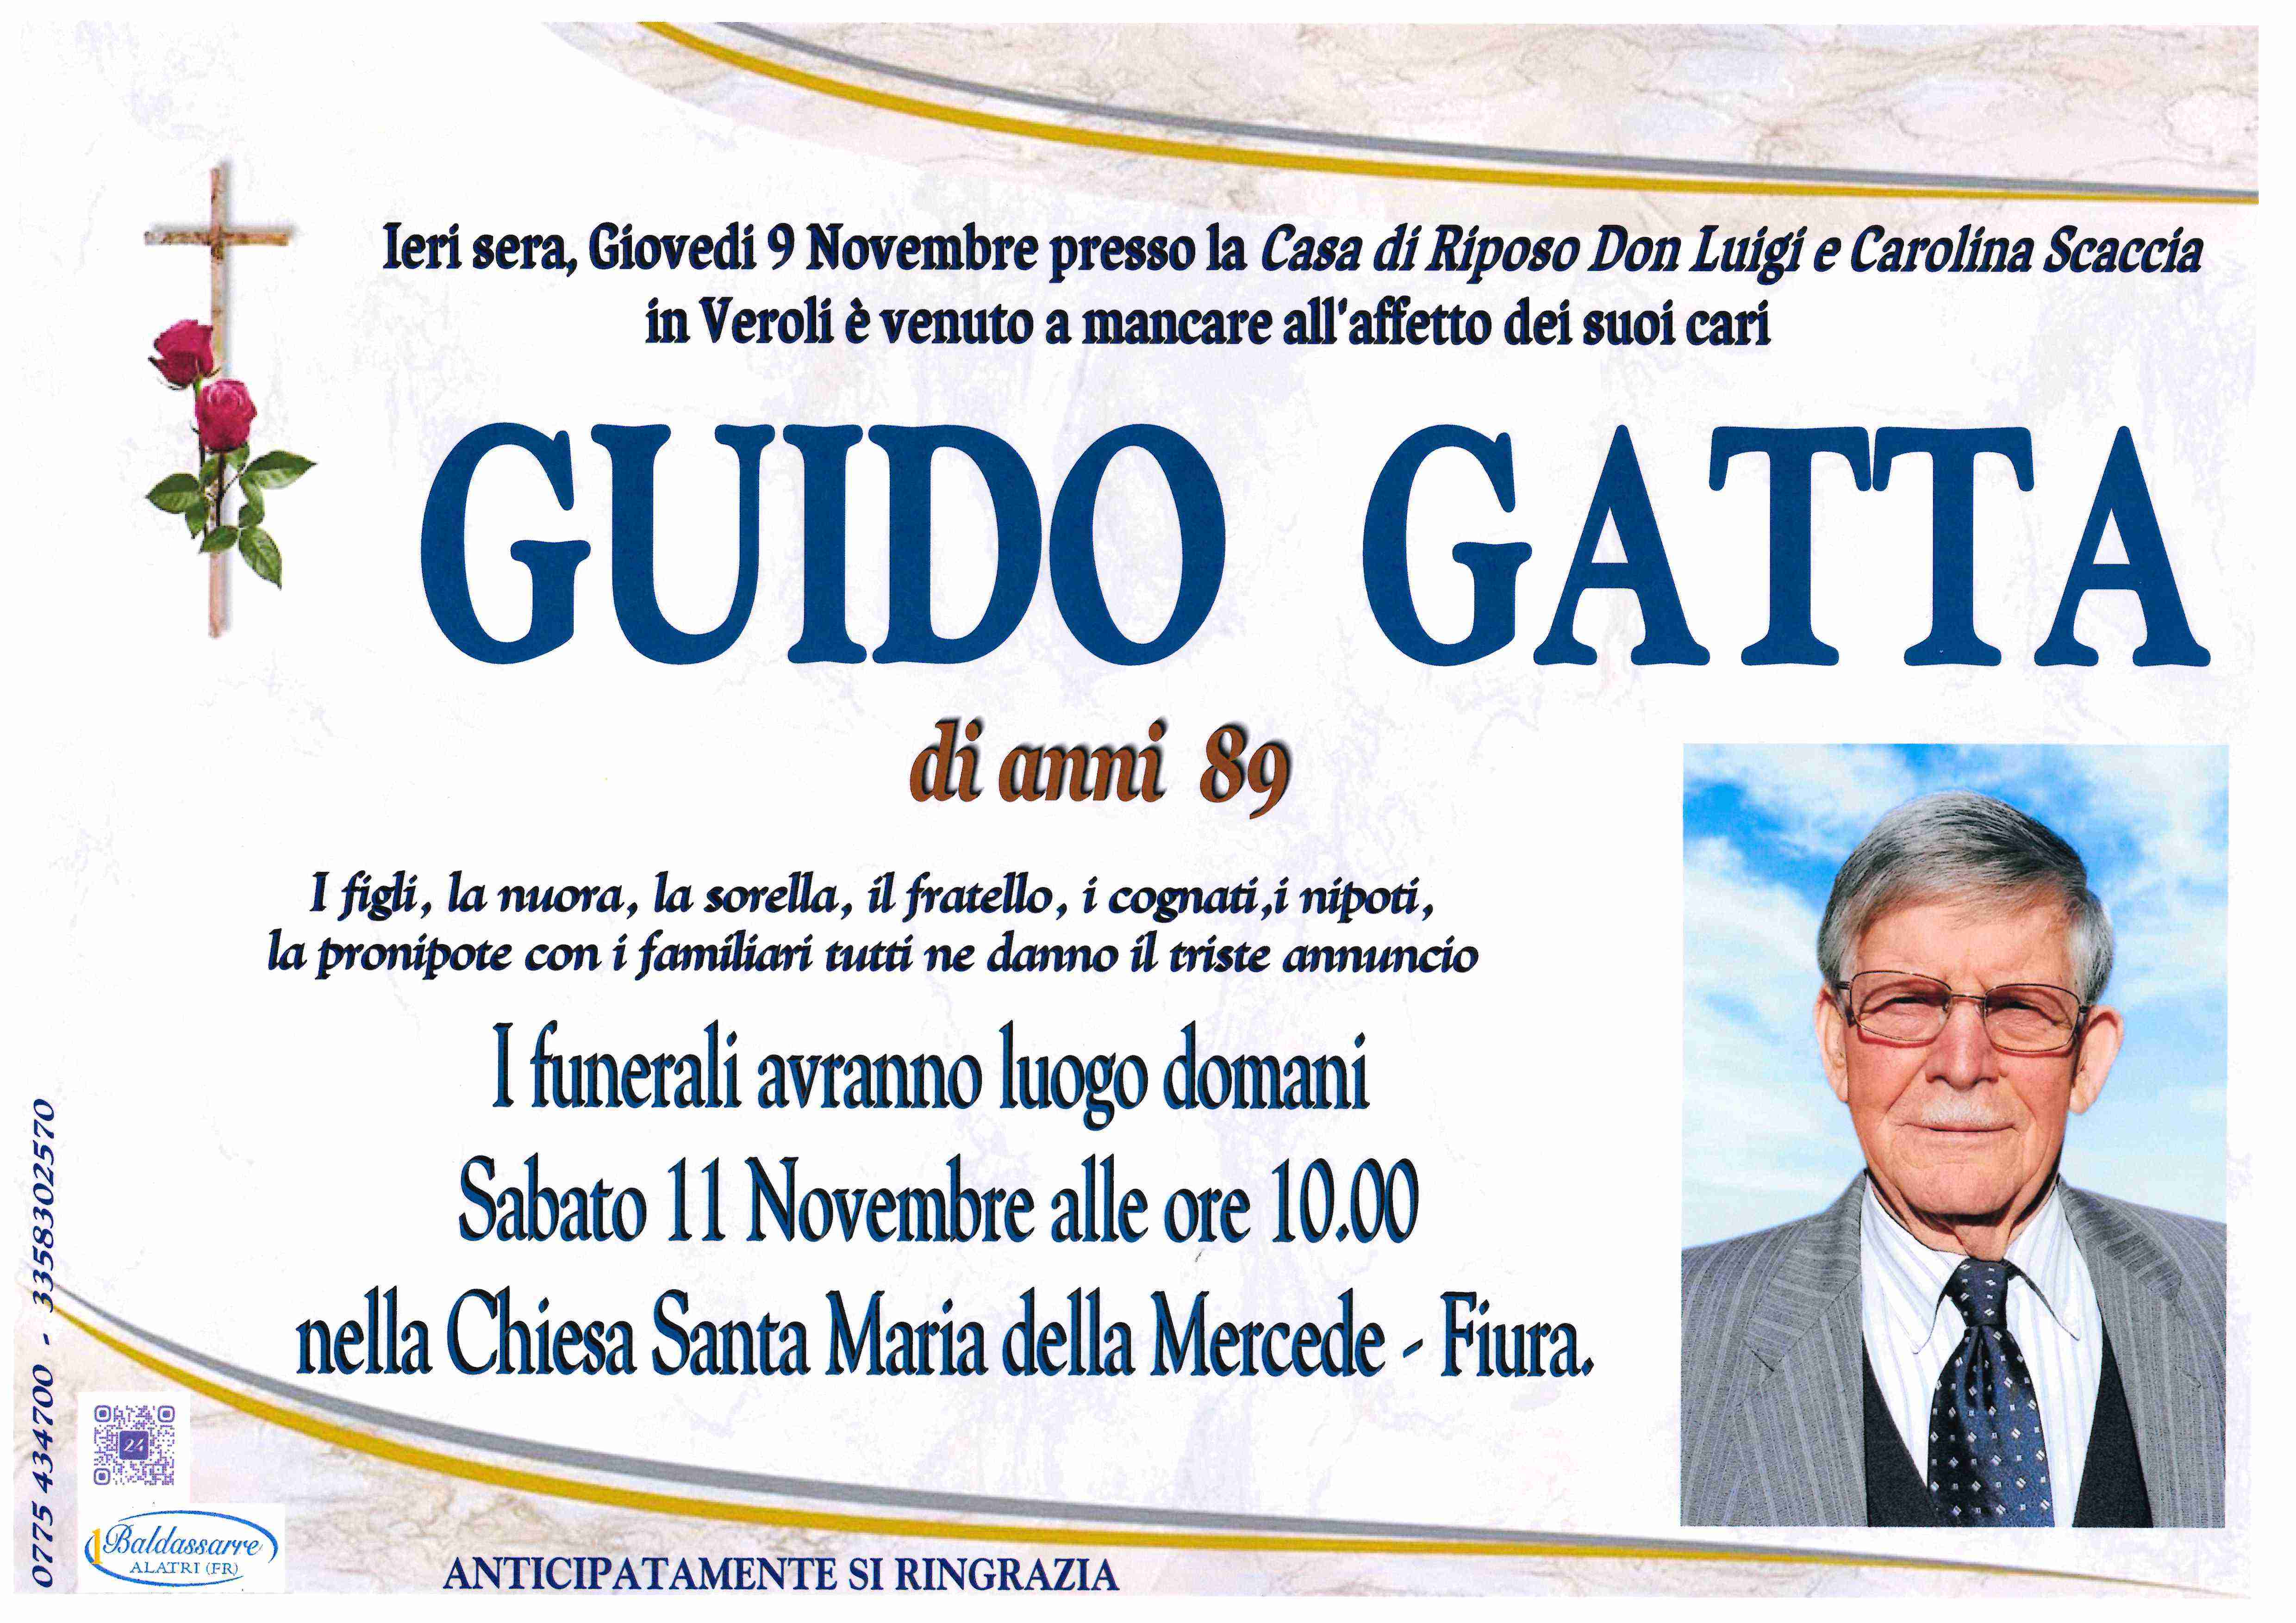 Guido Gatta